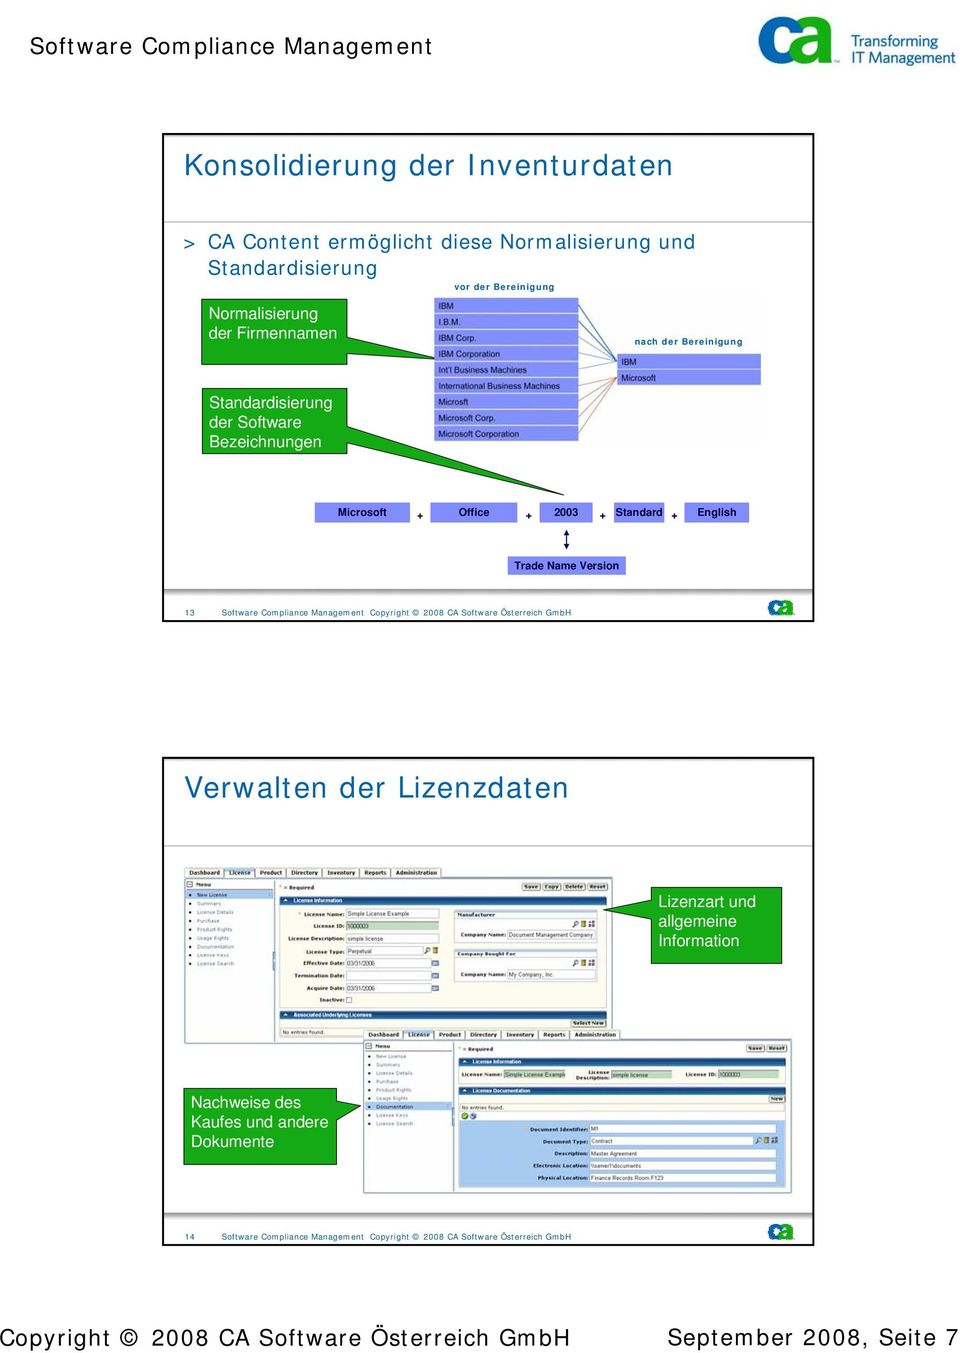 Software Compliance Management Copyright 2008 CA Software Österreich GmbH Verwalten der Lizenzdaten > Central inventory for licenses Lizenzart und allgemeine Information